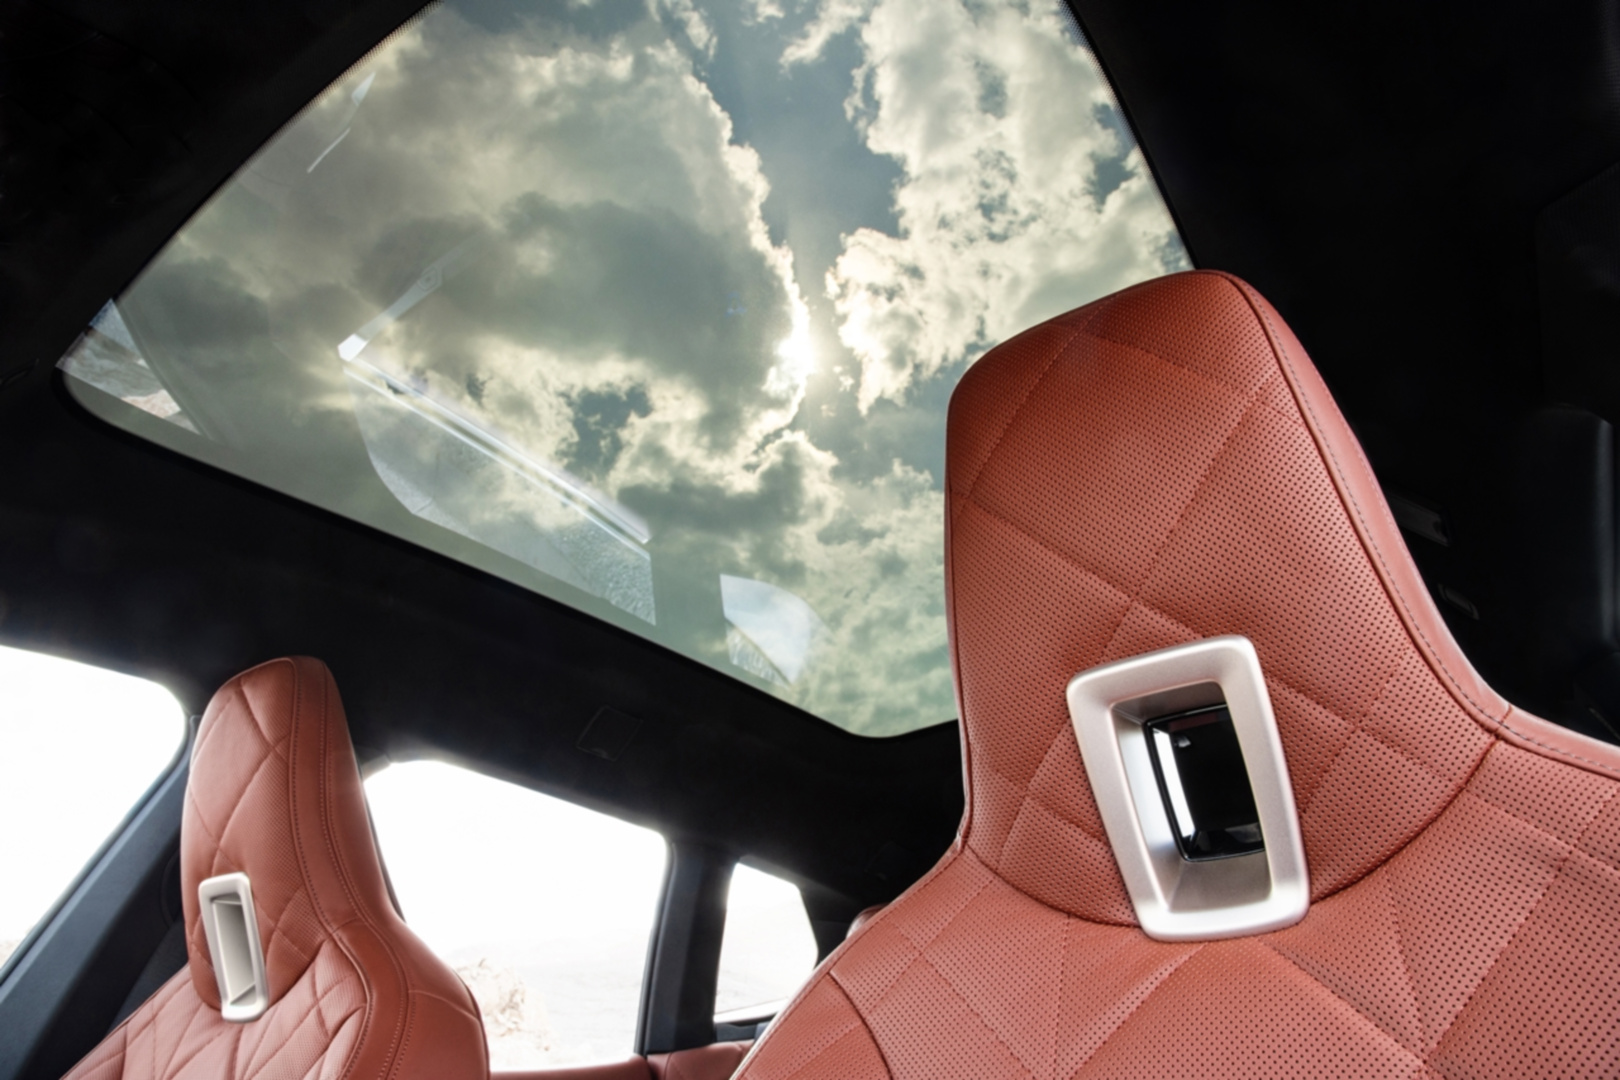 SMALL_[新聞照片六]全新電控調節採光全景式玻璃車頂，可透過電控調節變色遮陽，適時調節車室空間採光